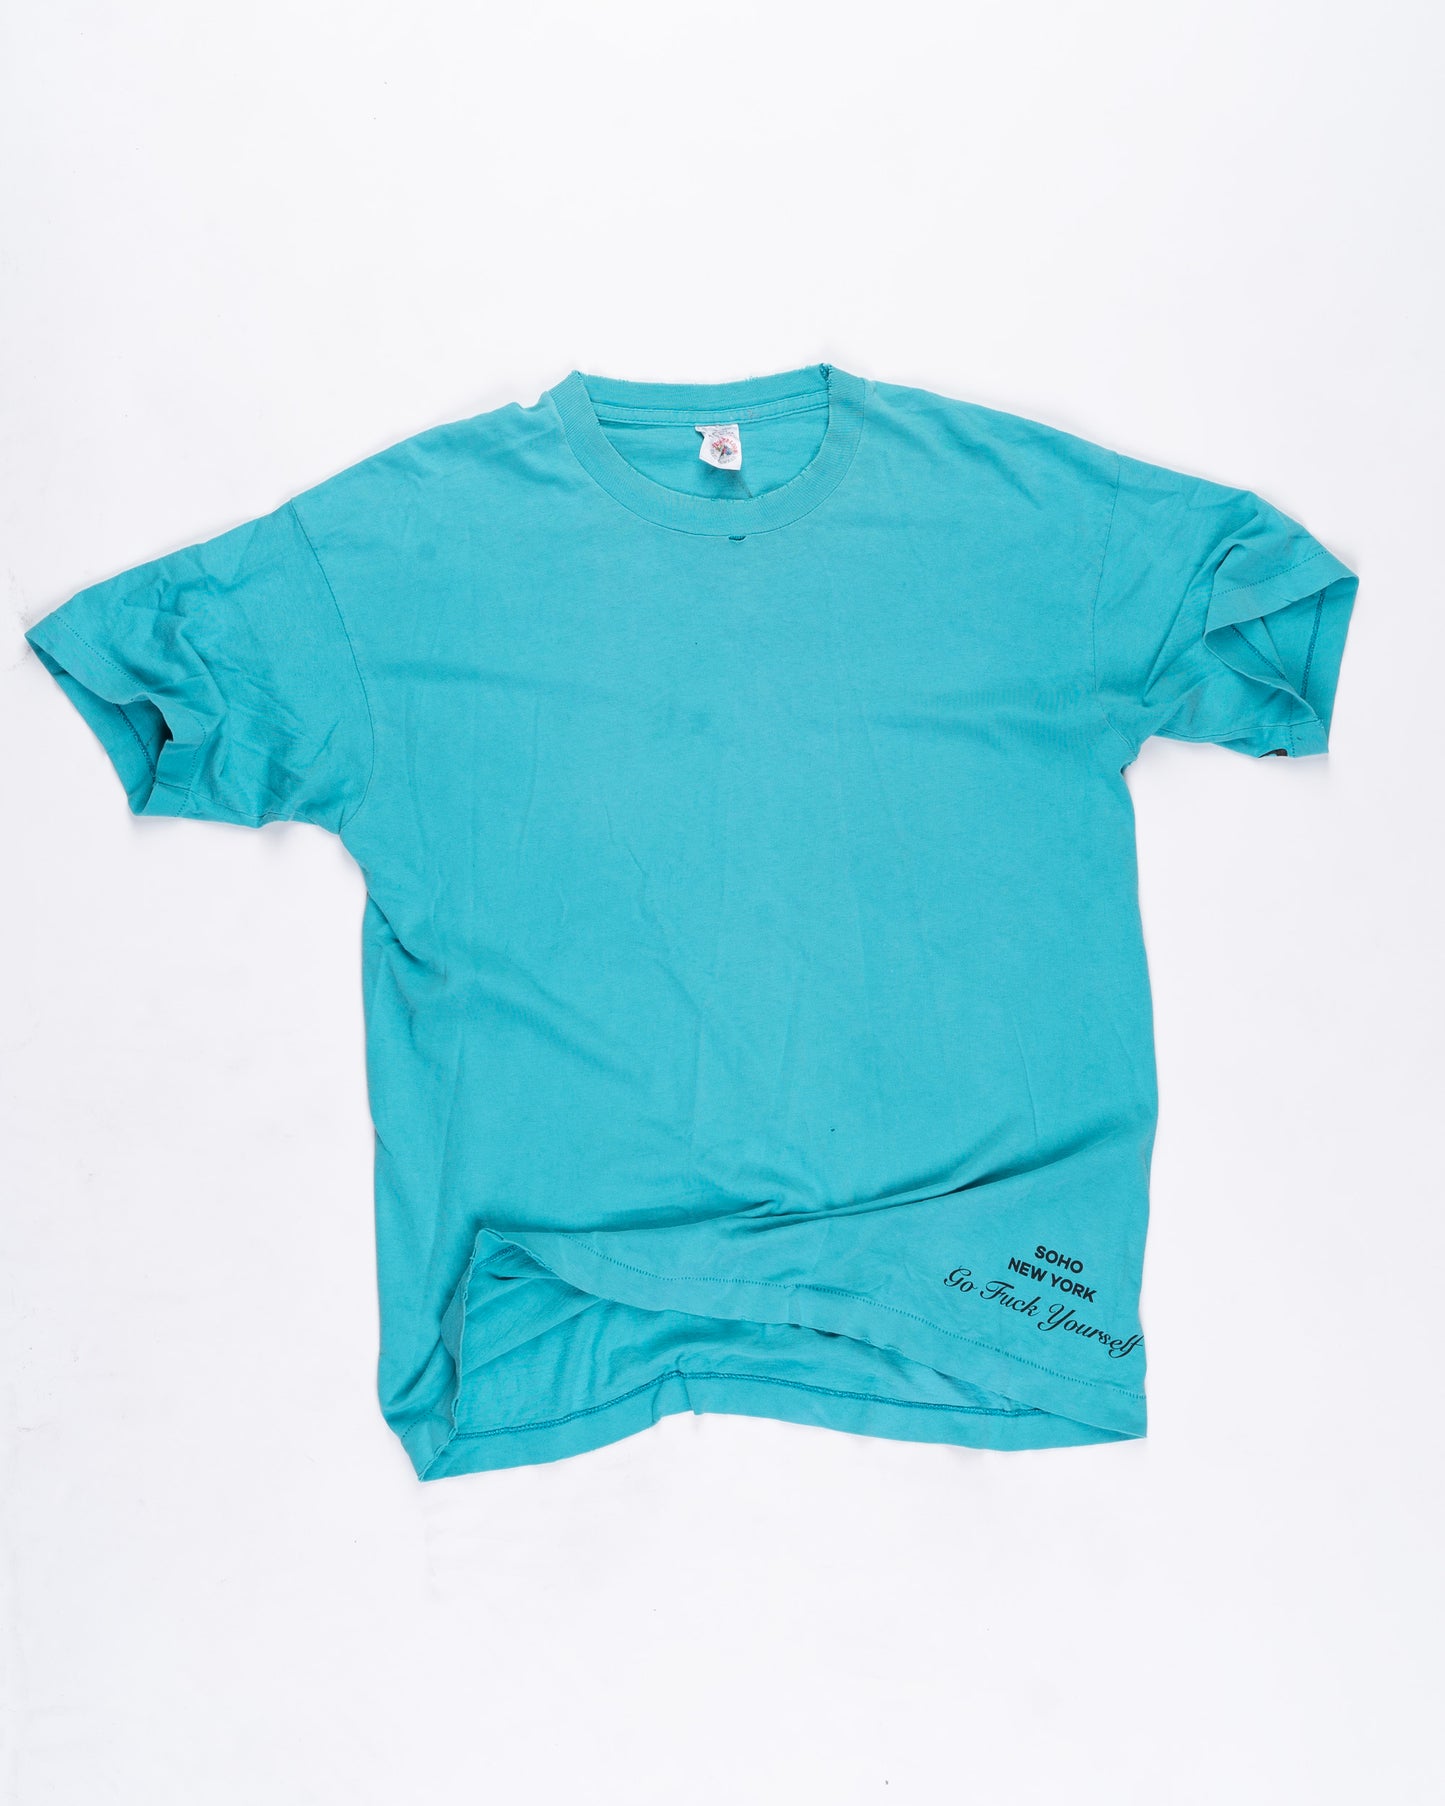 Turquoise T-Shirt Size: XLarge